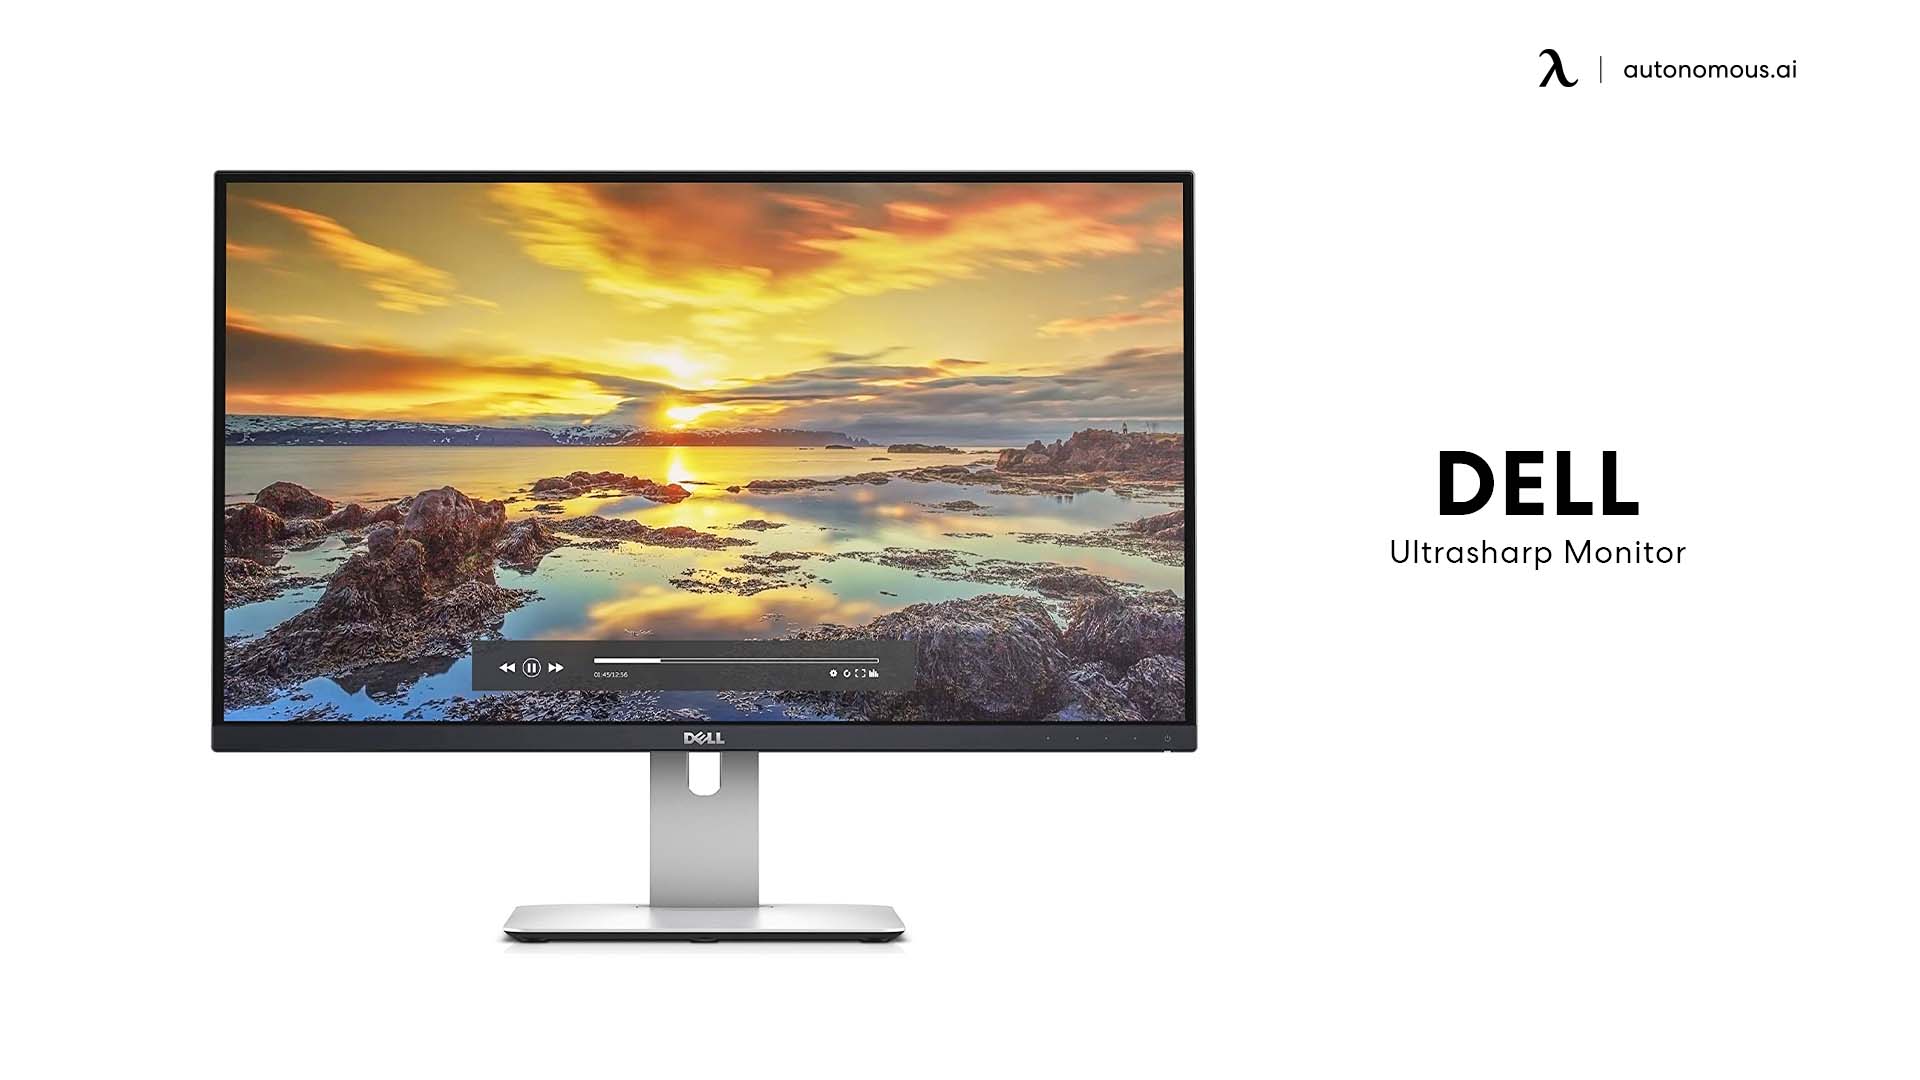 Dell Ultrasharp Monitor best monitor for software development